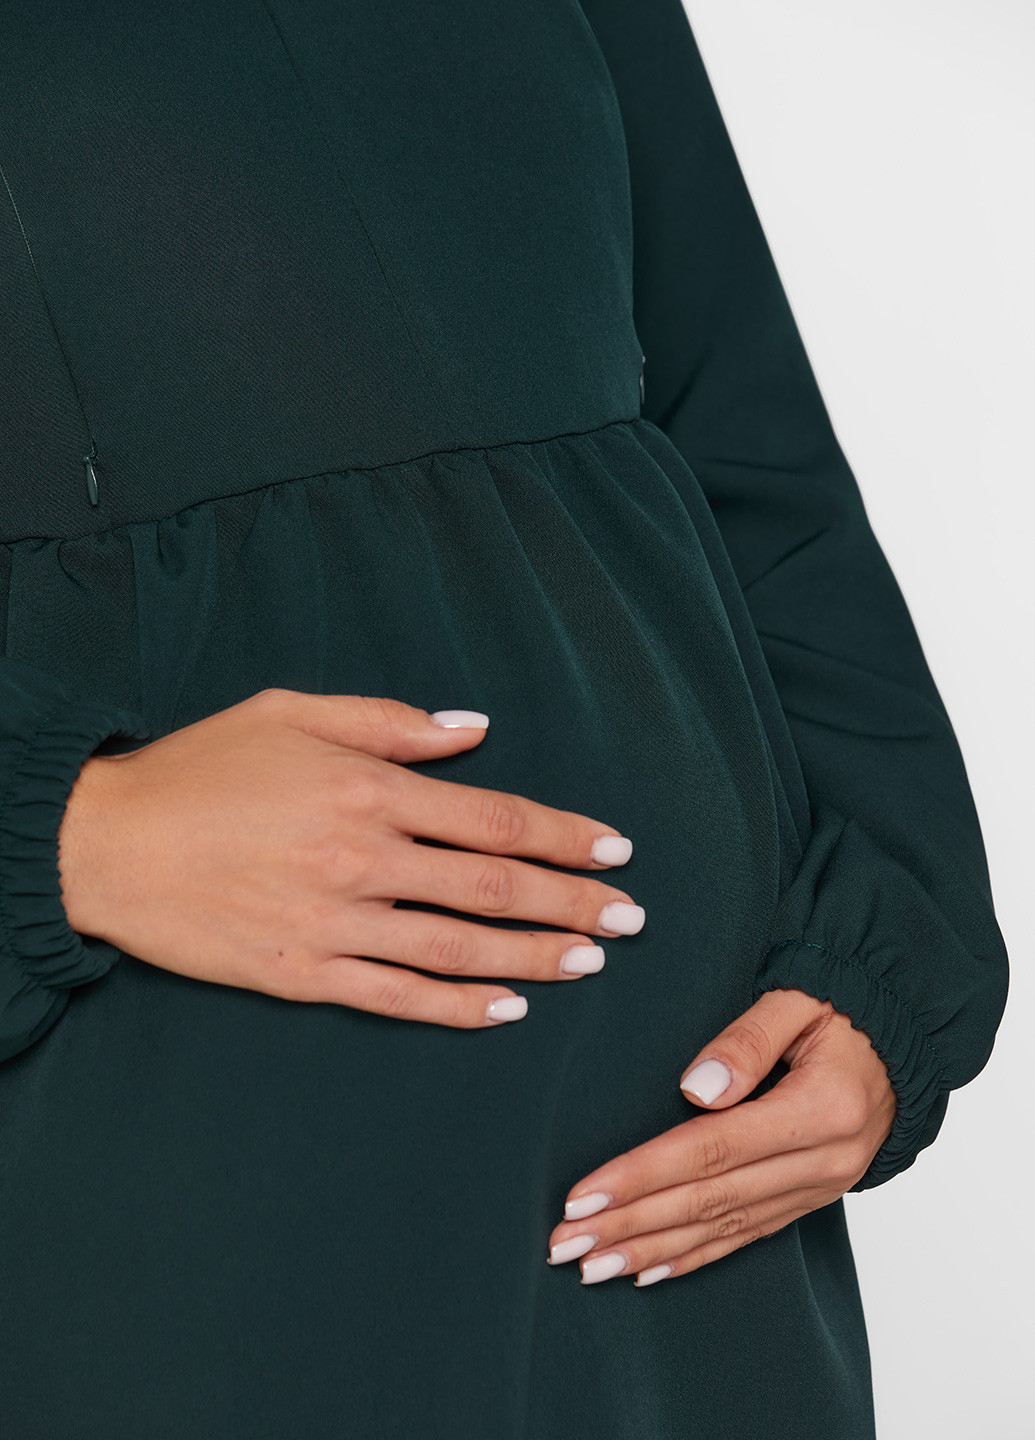 Зеленое кэжуал платье для беременных Lullababe однотонное